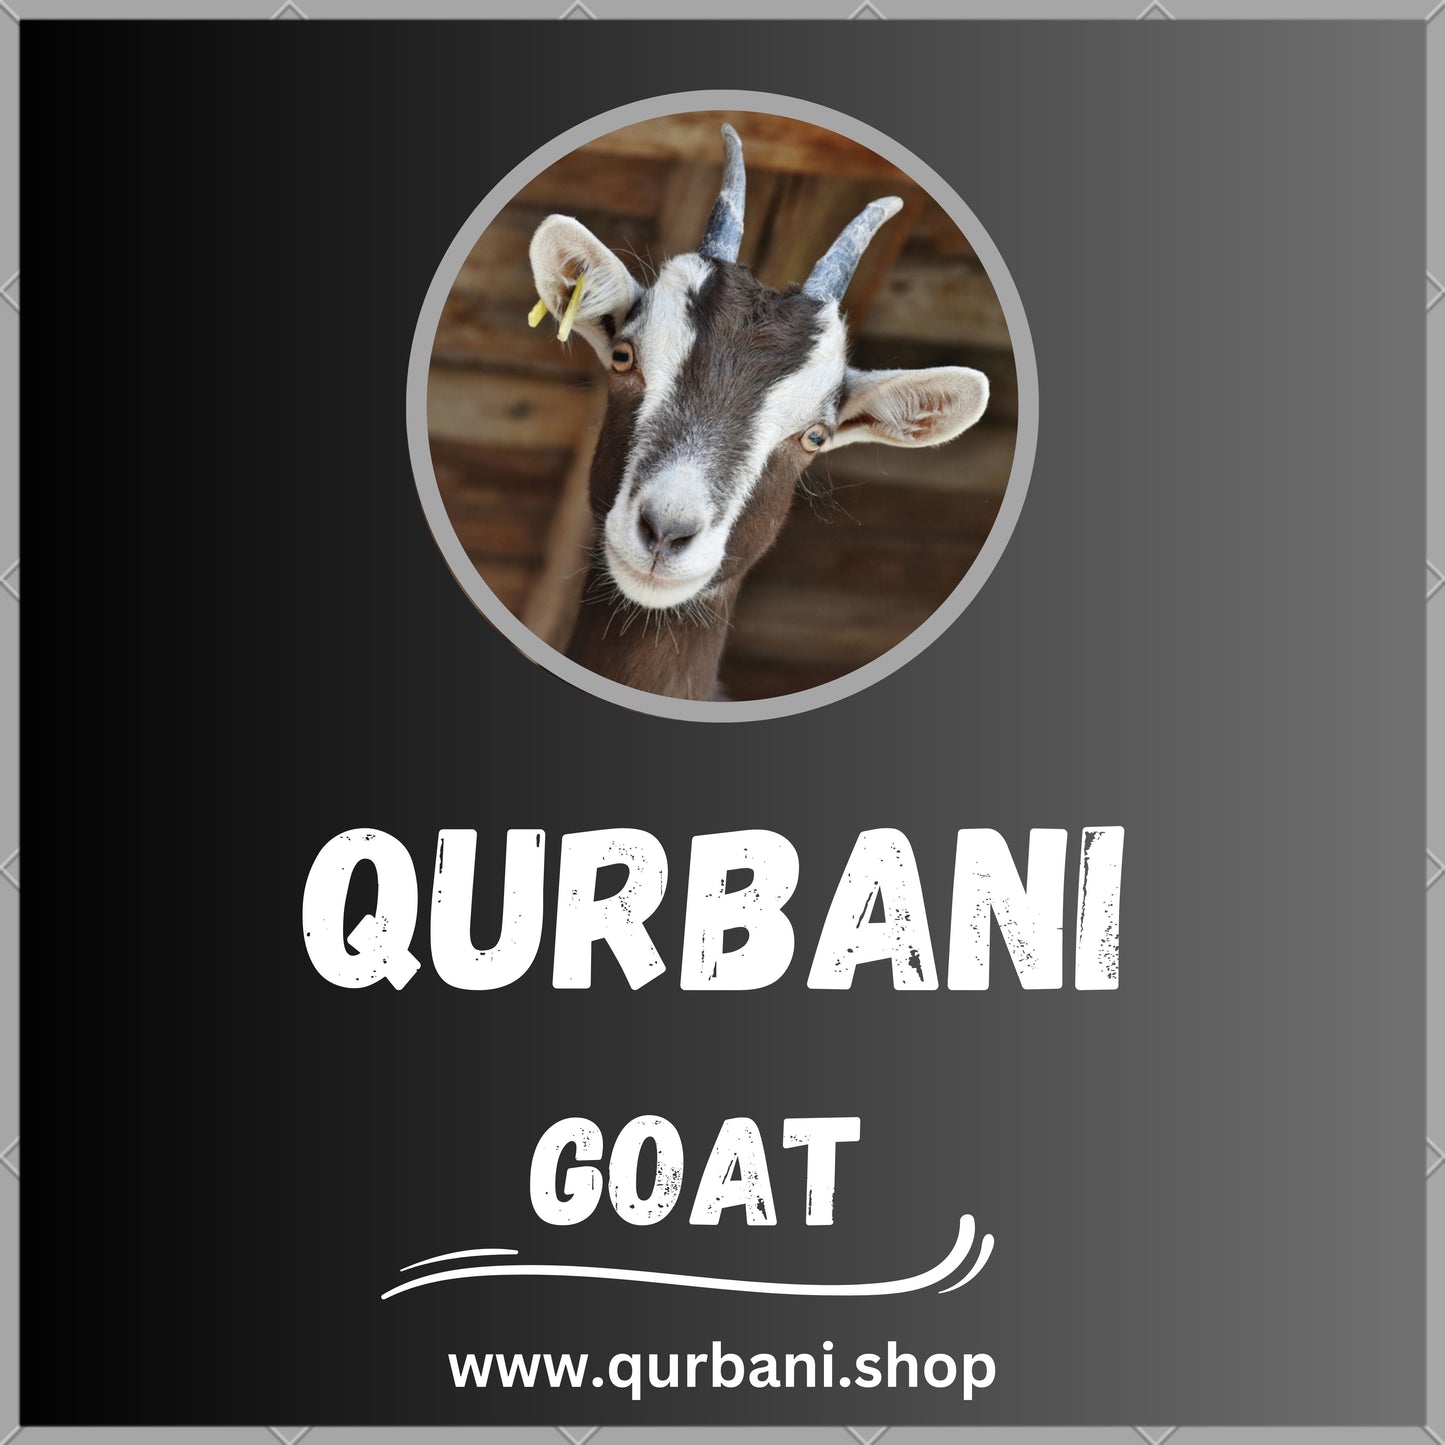 Convenient Online Qurbani Services for Eid - Book Now